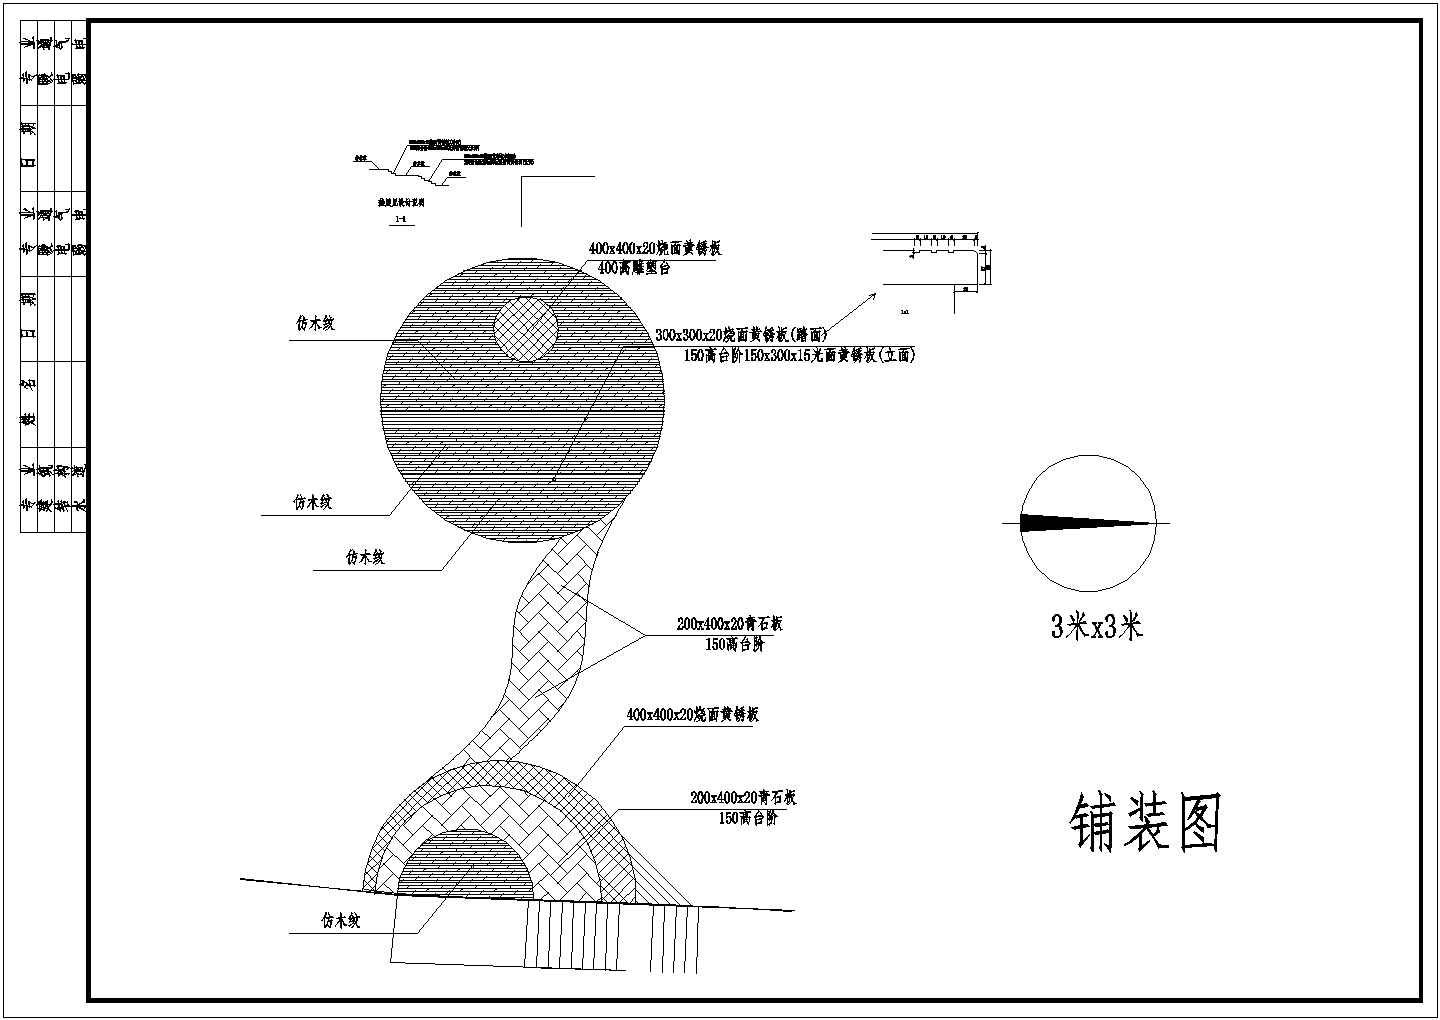 重庆某湿地公园景观CAD施工图设计慈云寺圆建